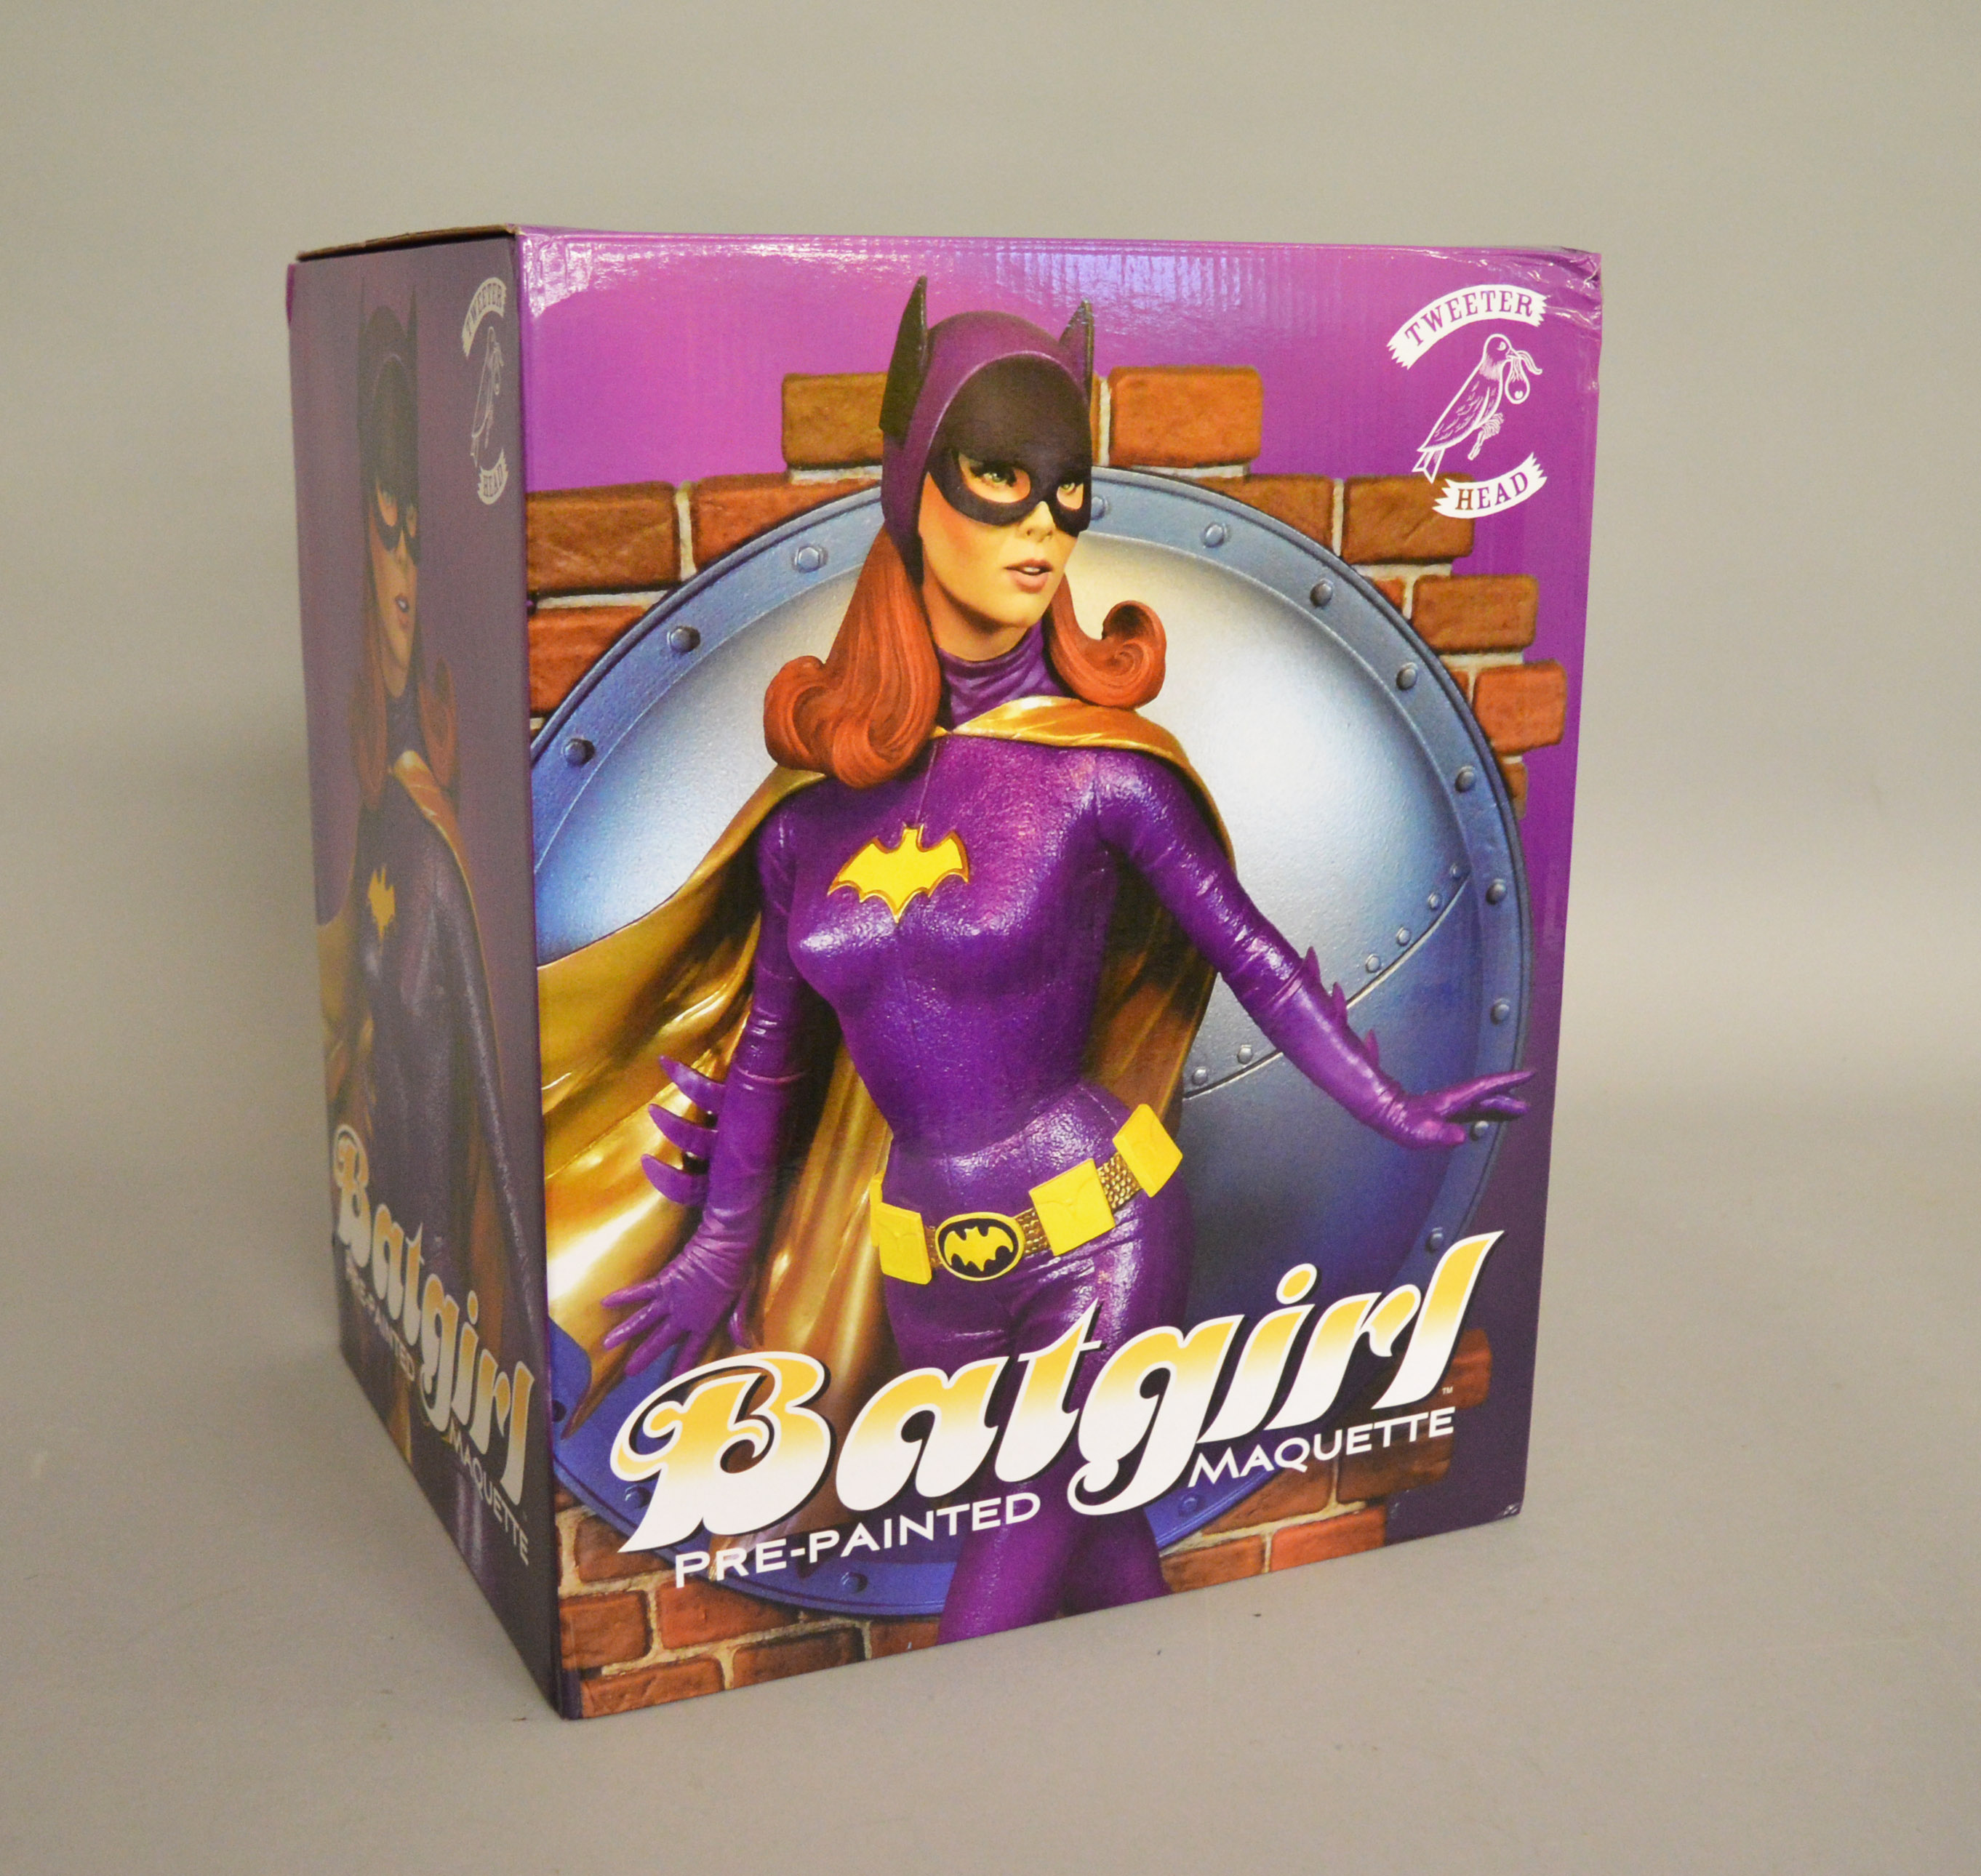 Batman classic TV series pre painted Batgirl by Tweeter Head.